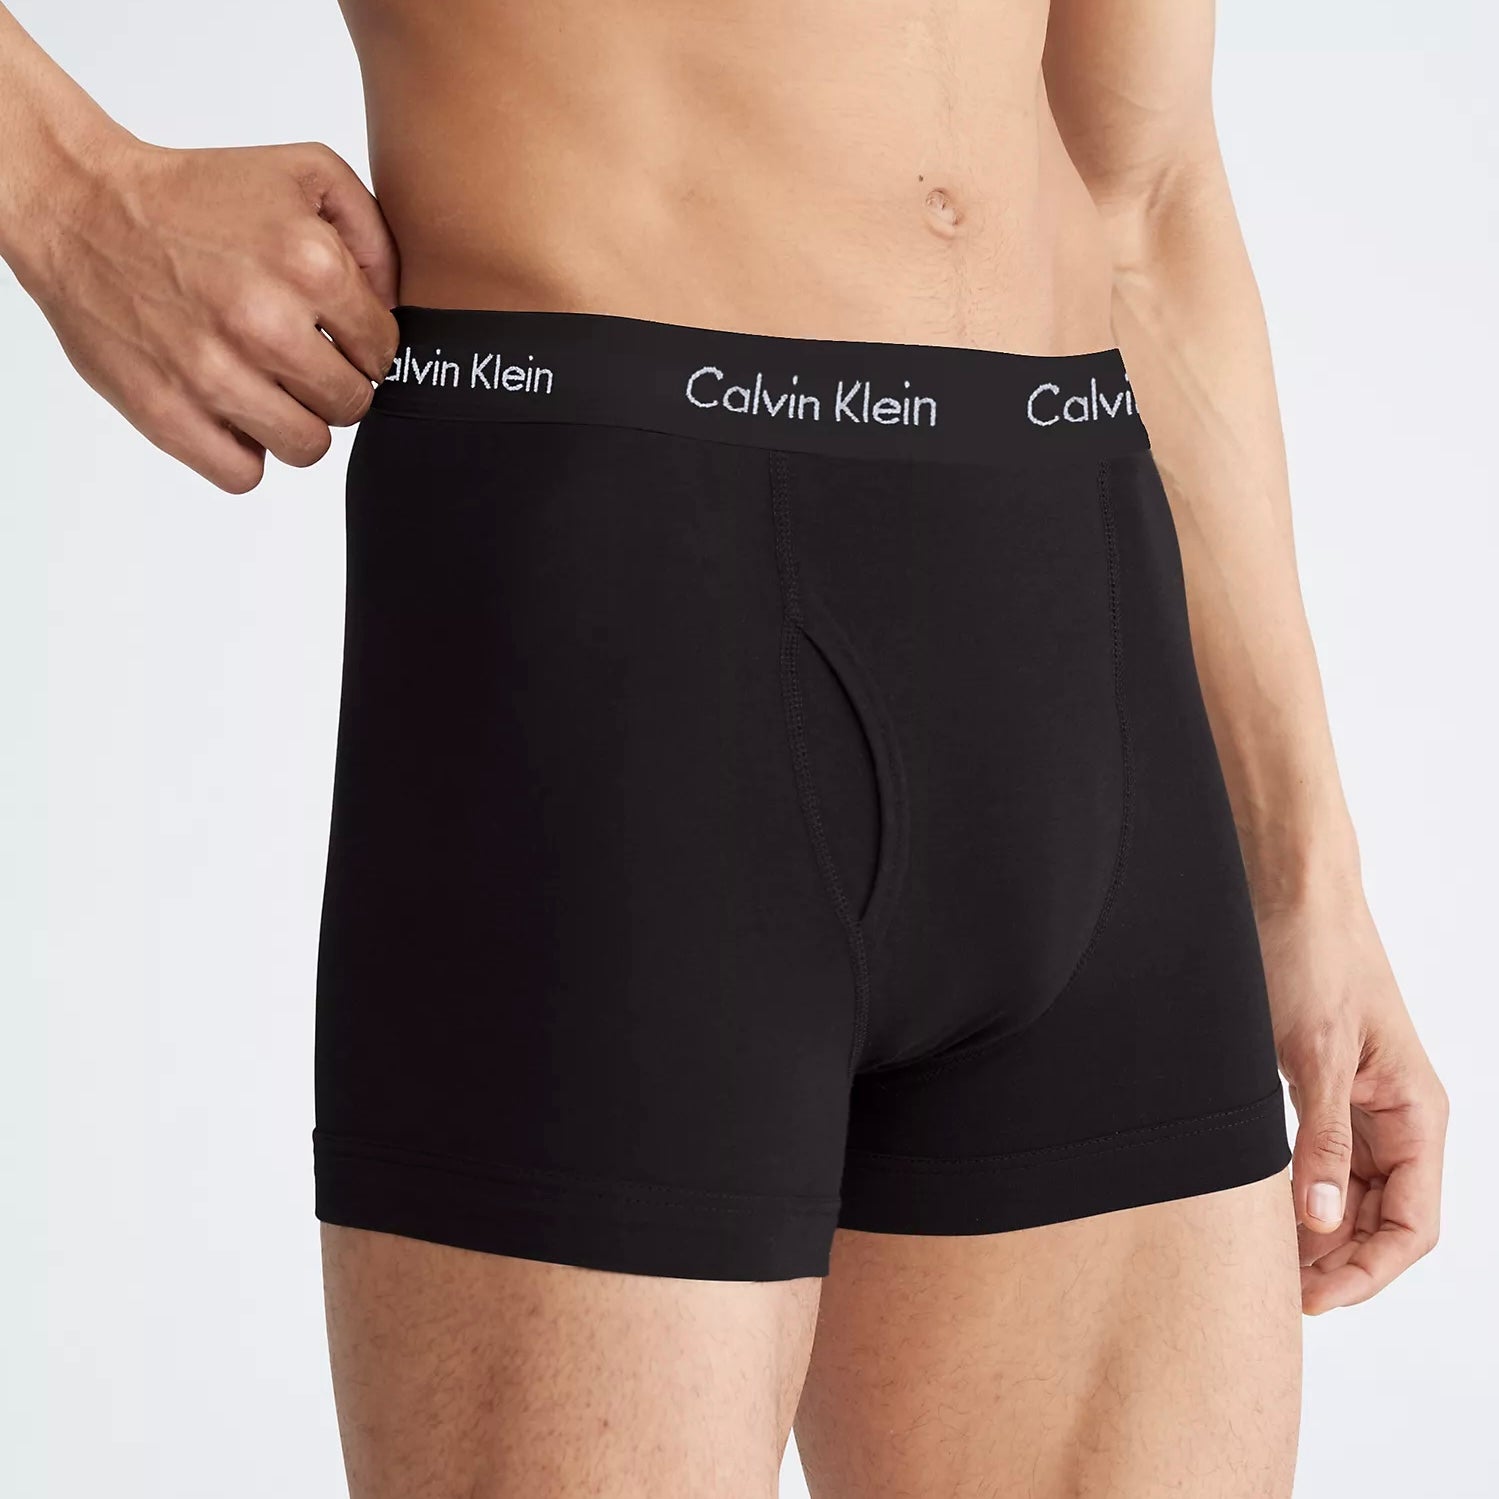 calvin klein underwear calvin klein boxer trunk underwear quần calvin klein giá  